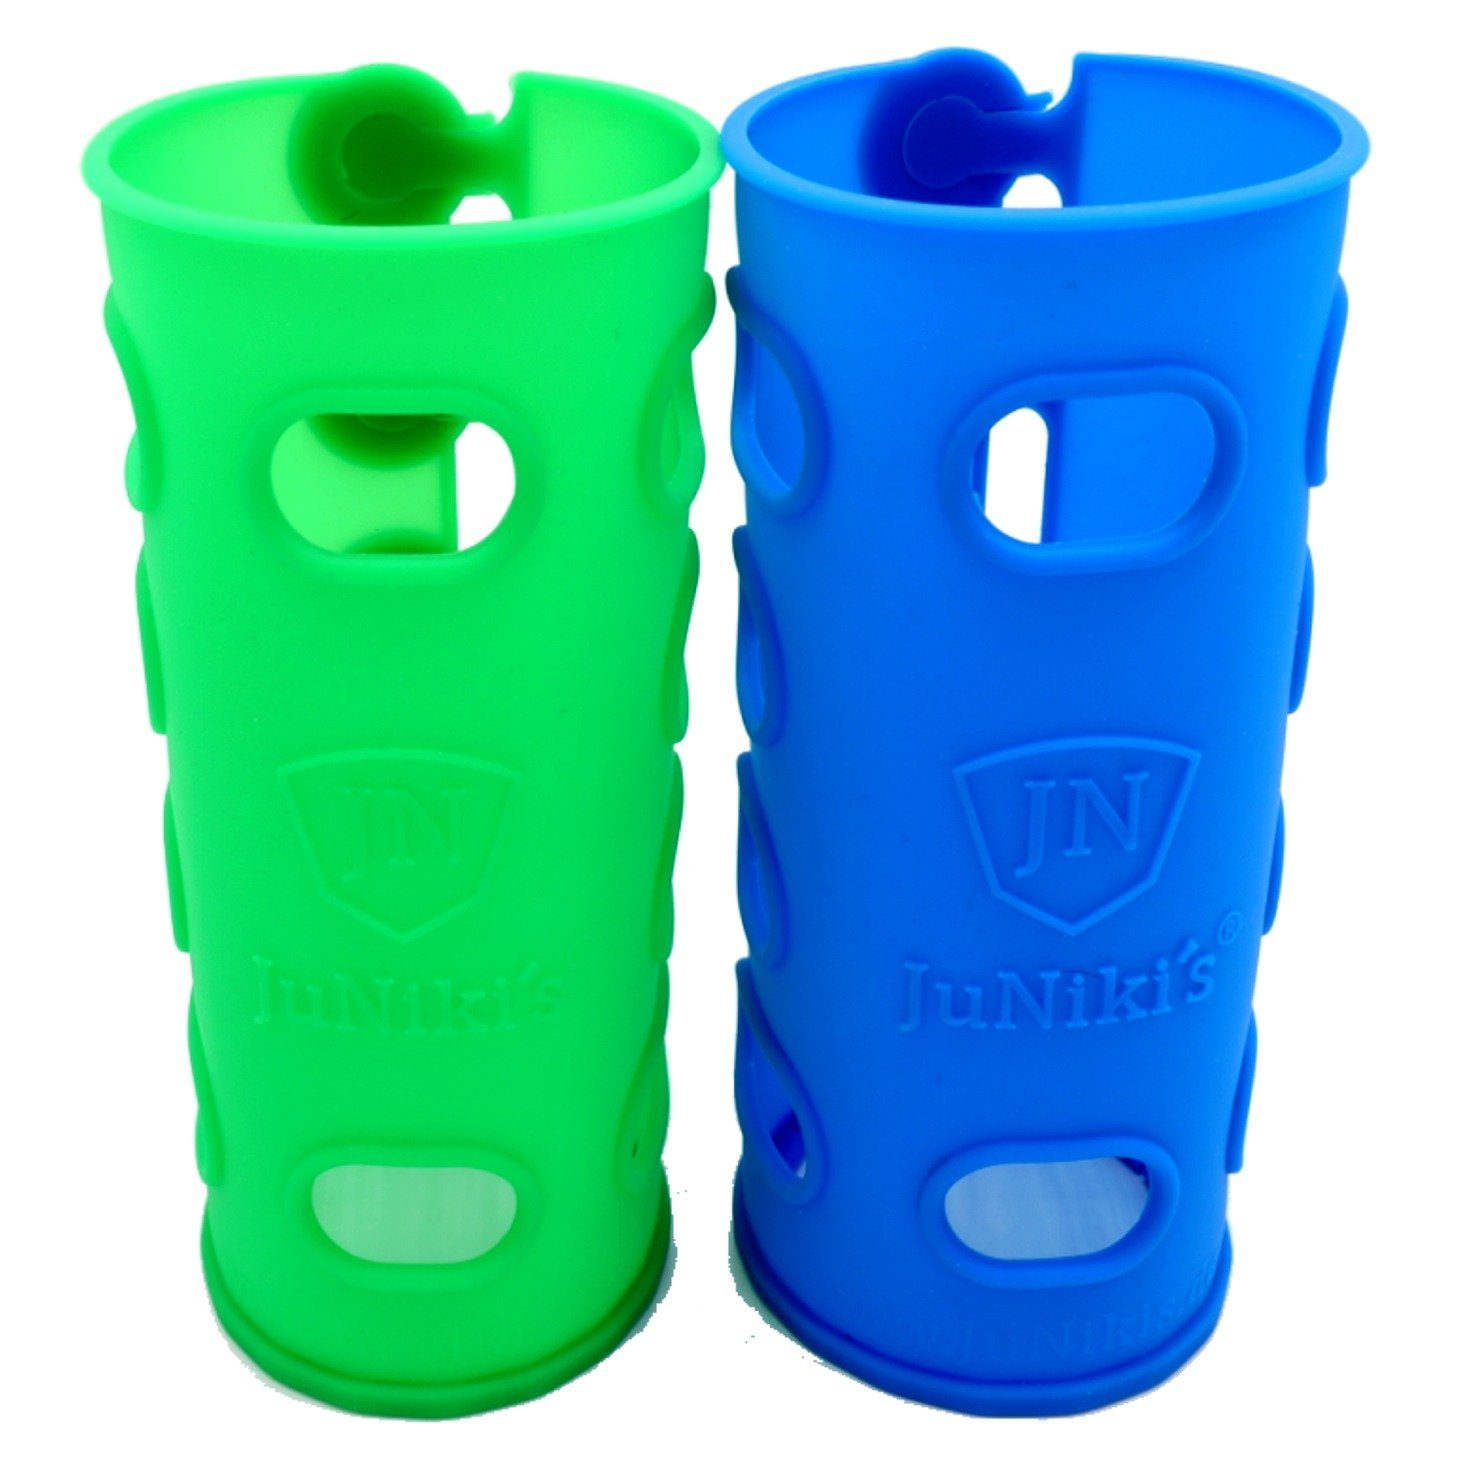 auslaufsichere und Set 2er grün JuNiki´s eco Double pend) Edelstahl-Trinkflasche (pat. JN Neck® isolierte Deckel JuNiki´s Isolierflasche blau line, mit Silikonhüllen